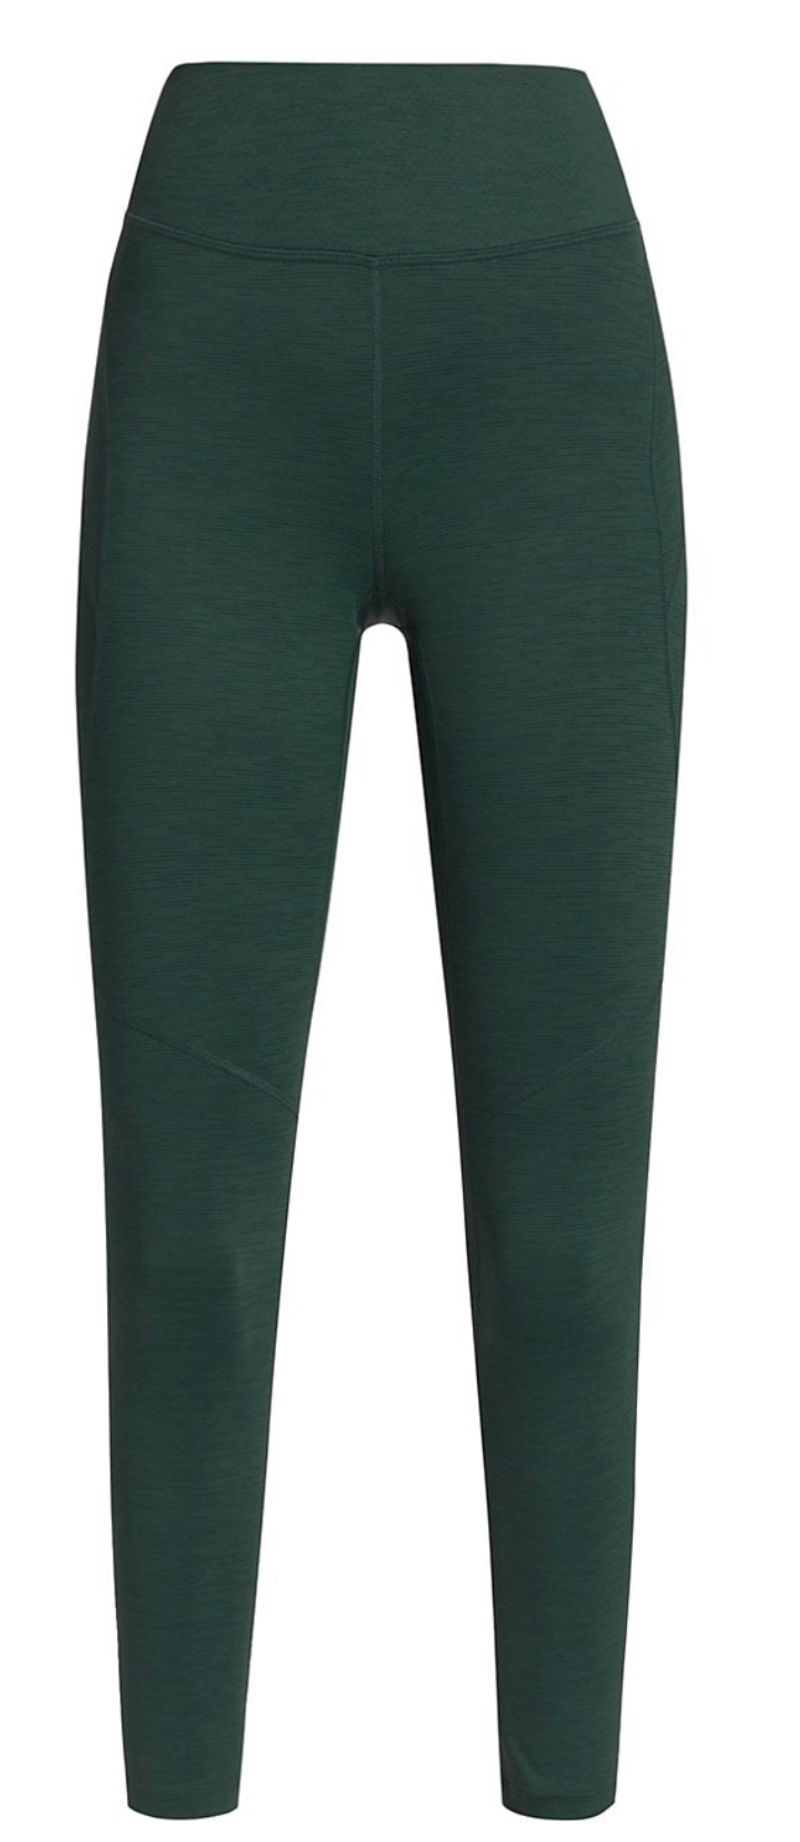 Forest green leggings 